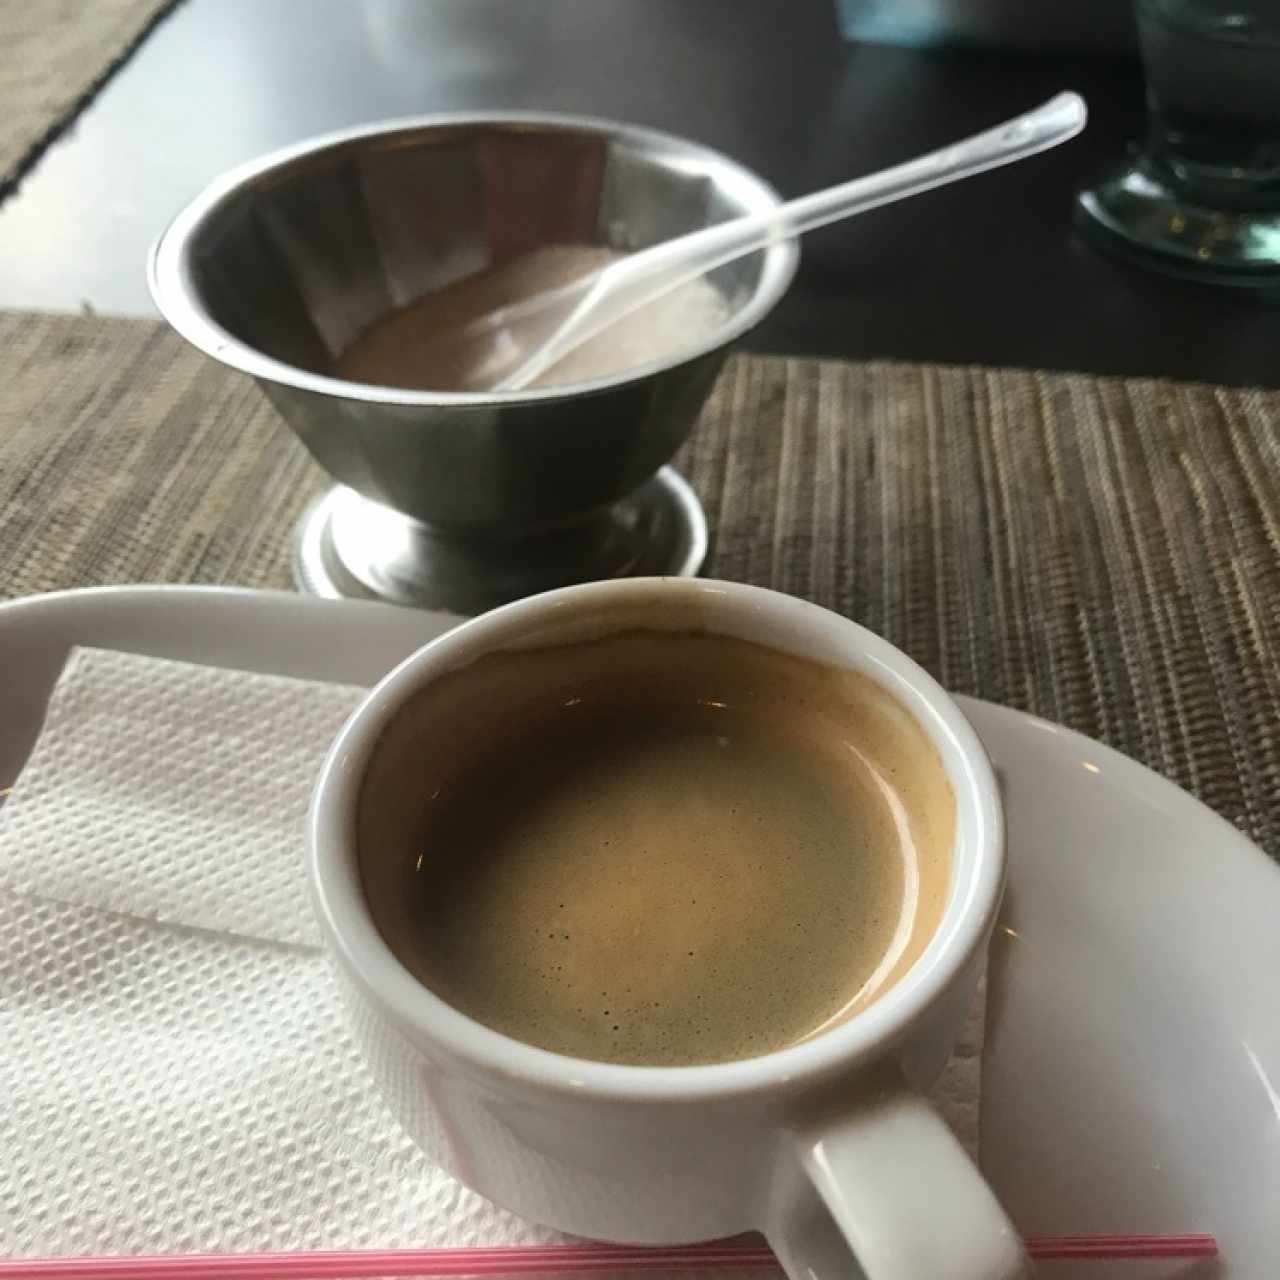 cafe espresso